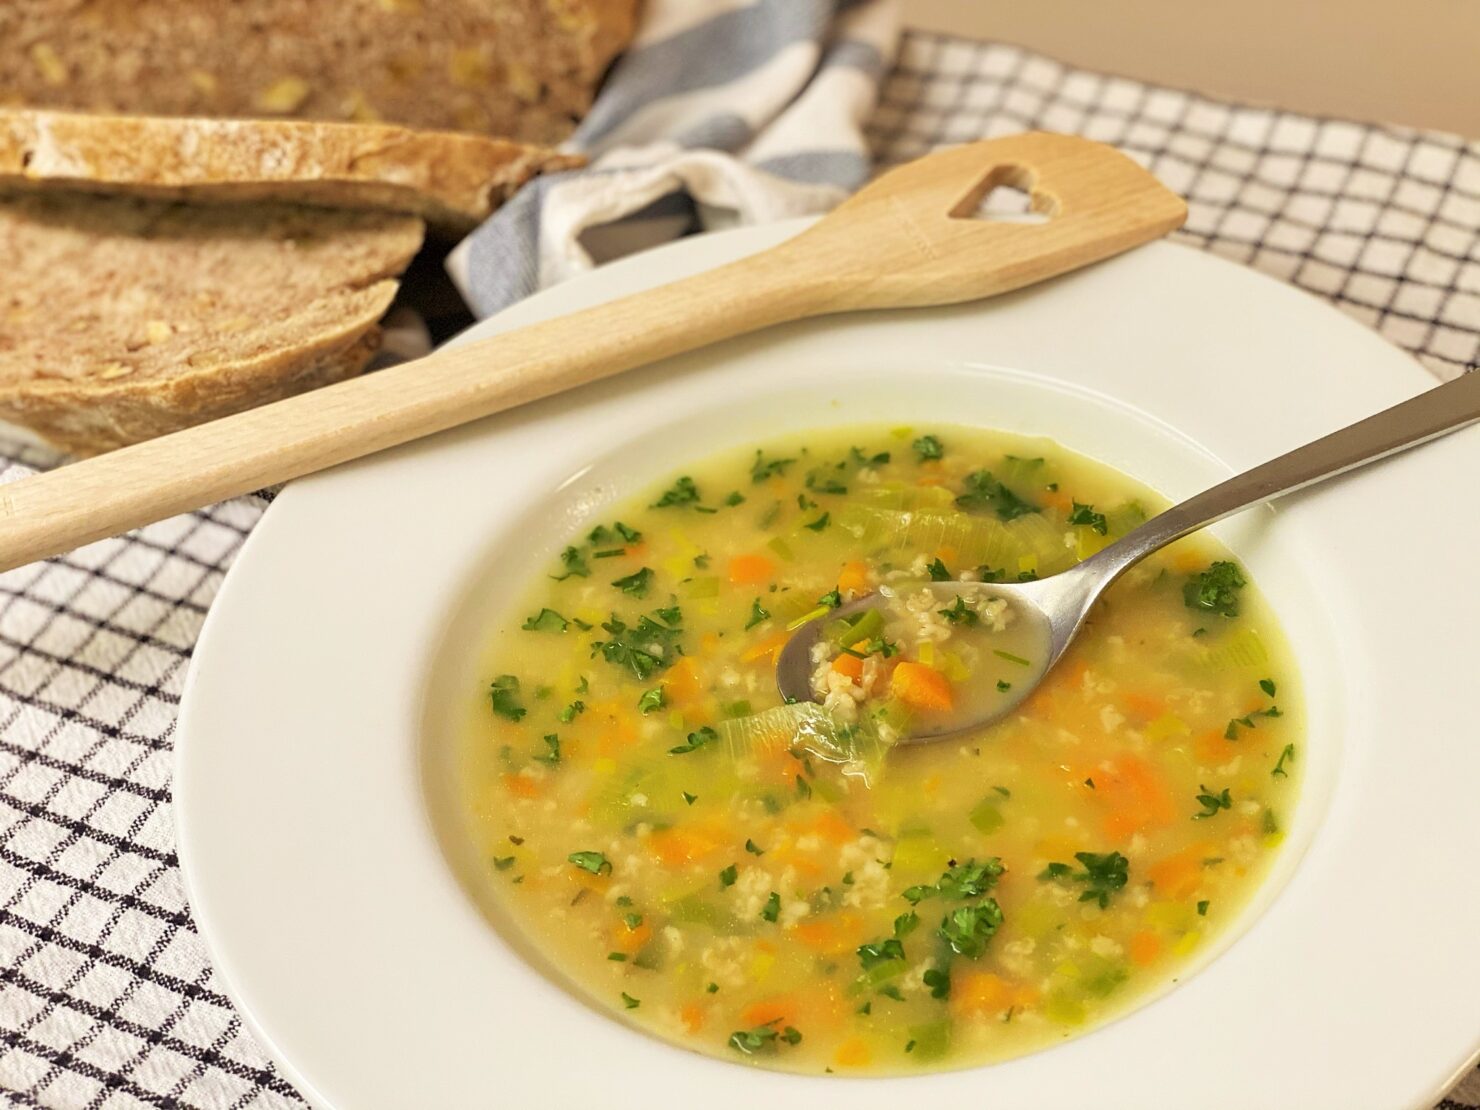 Gemüsesuppe mit Haferflocken - fantastisch gut und schnell gemacht!